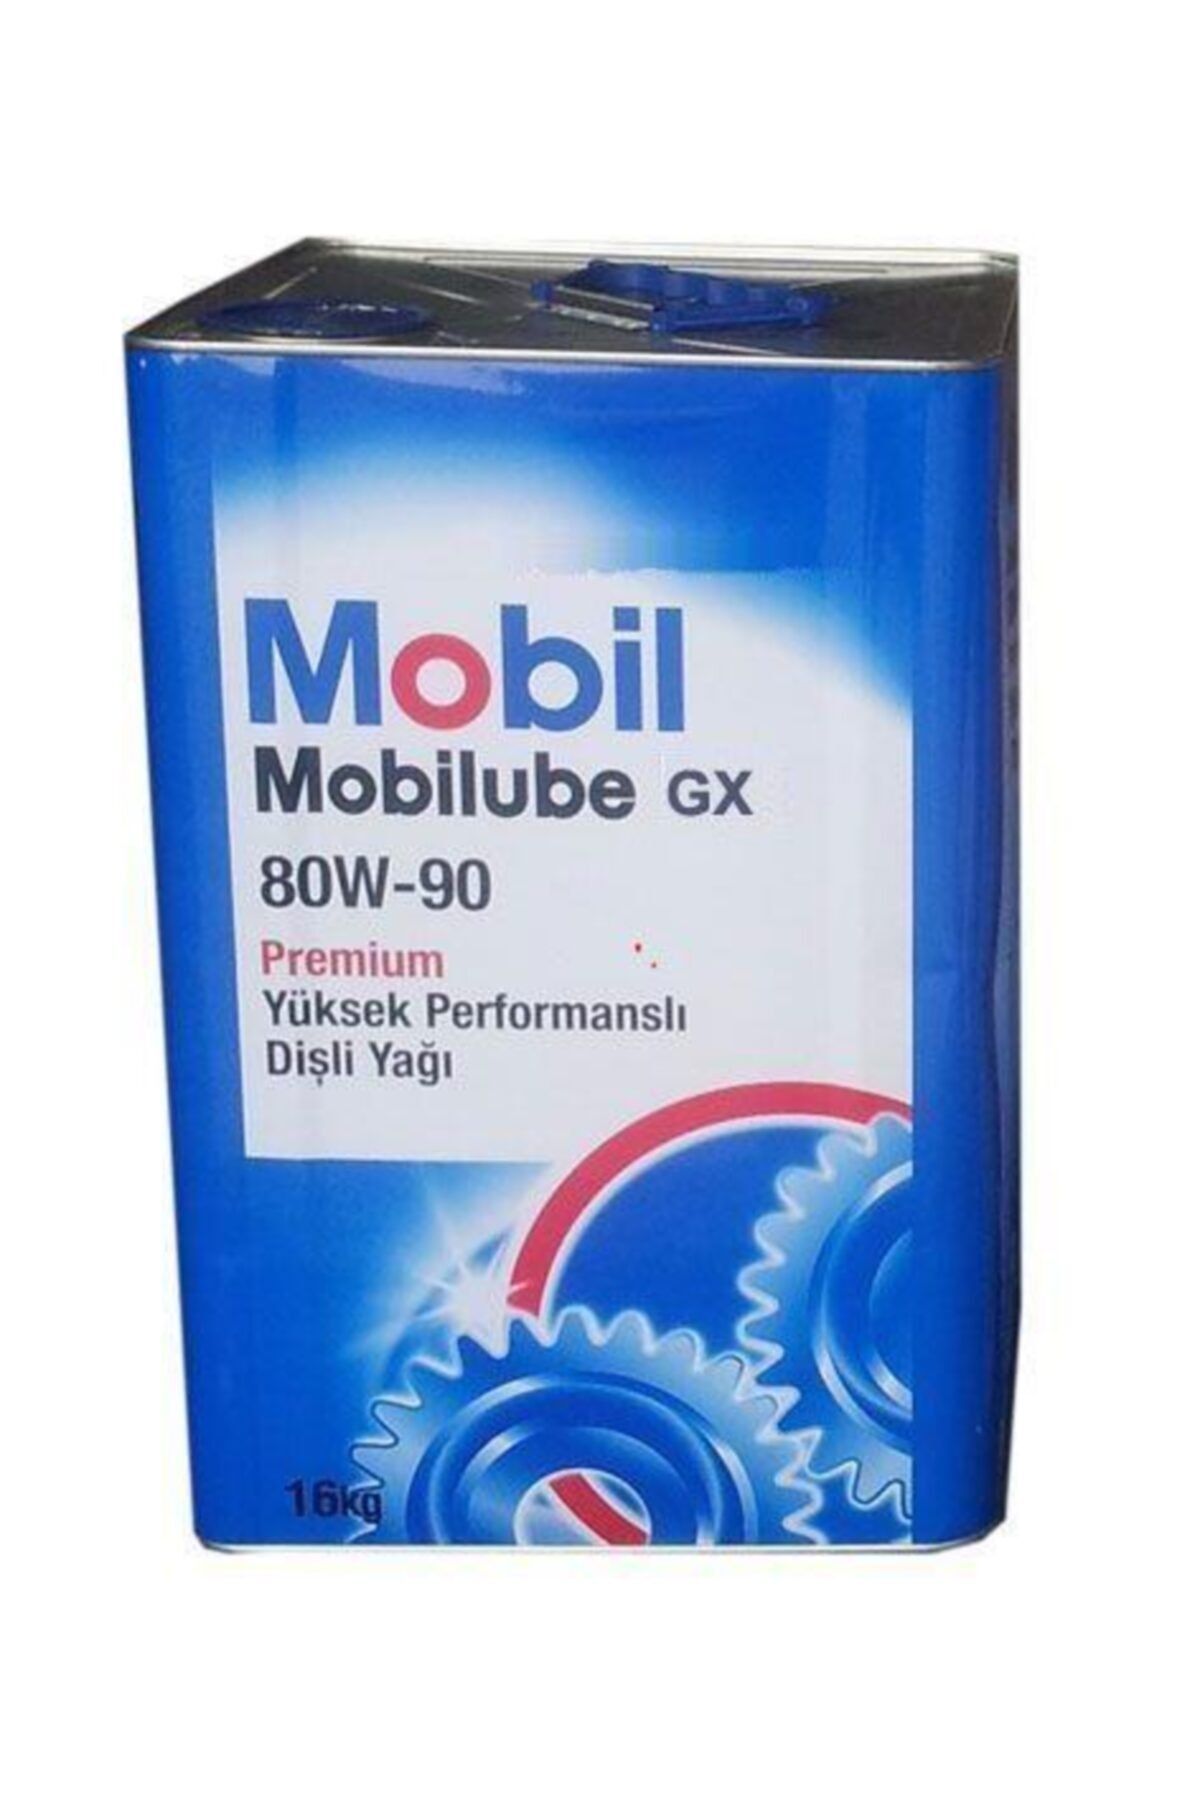 Mobil Mobılube Gx 80w90 Teneke 16 Kg (18 Litre)